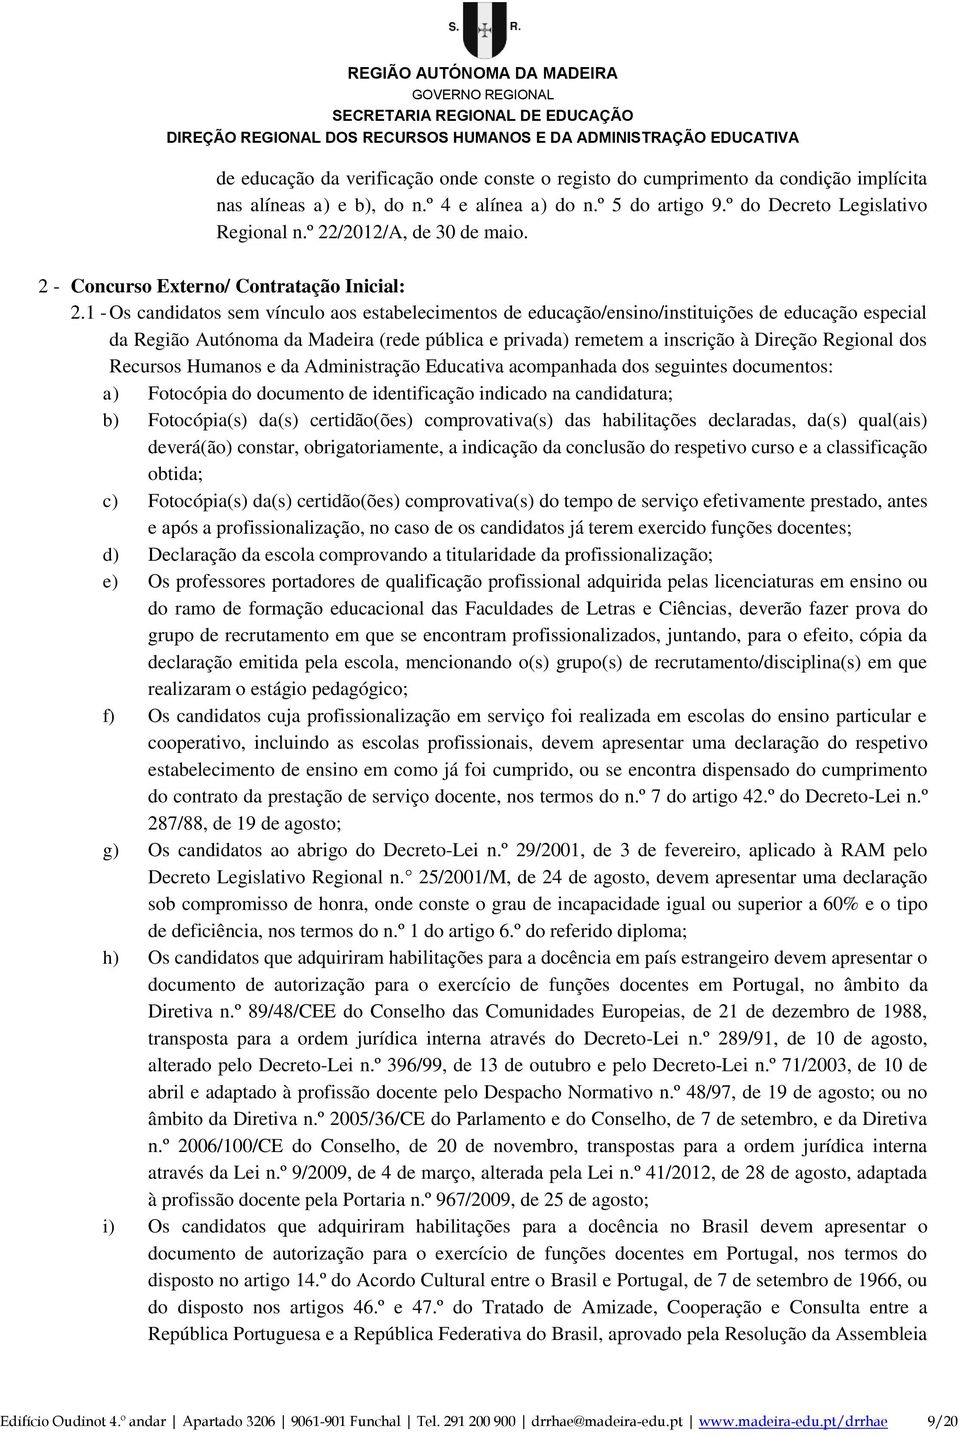 1 - Os candidatos sem vínculo aos estabelecimentos de educação/ensino/instituições de educação especial da Região Autónoma da Madeira (rede pública e privada) remetem a inscrição à Direção Regional